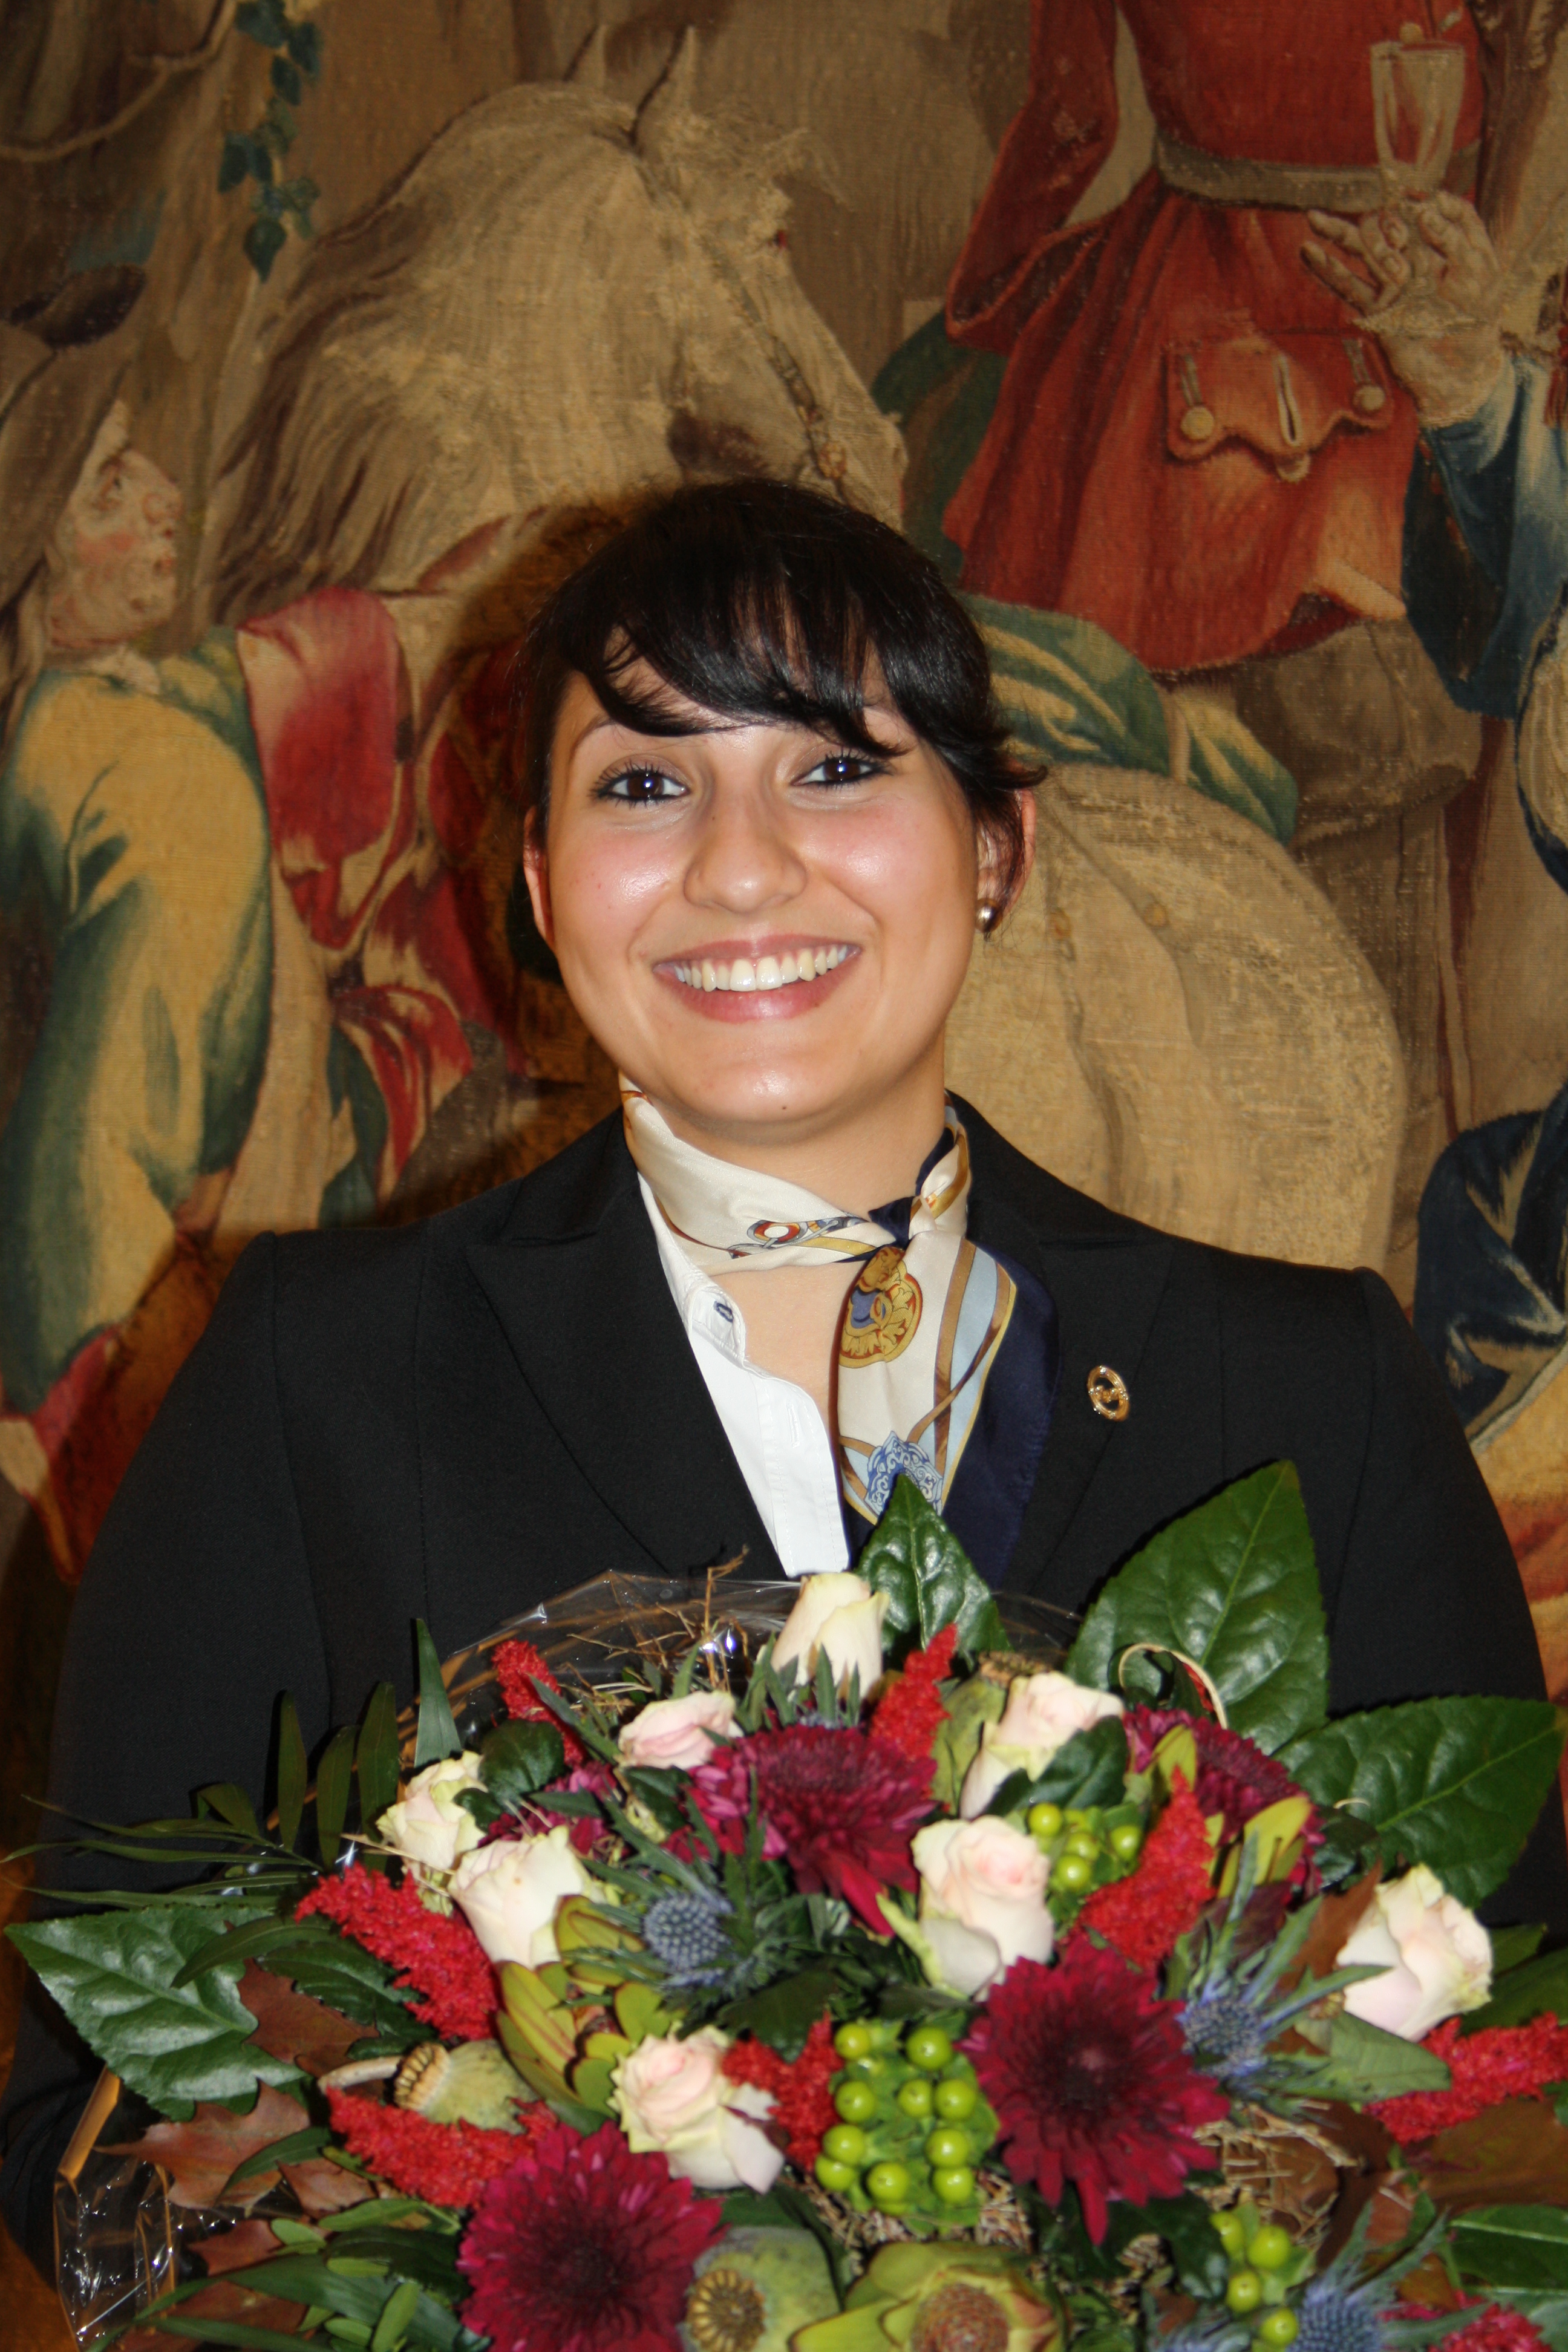 Rima Barakat aus dem Excelsior Ernst in Köln ist Rezeptionistin des Jahres 2012 und erreichte den vierten Platz beim "International Receptionist of the Year"